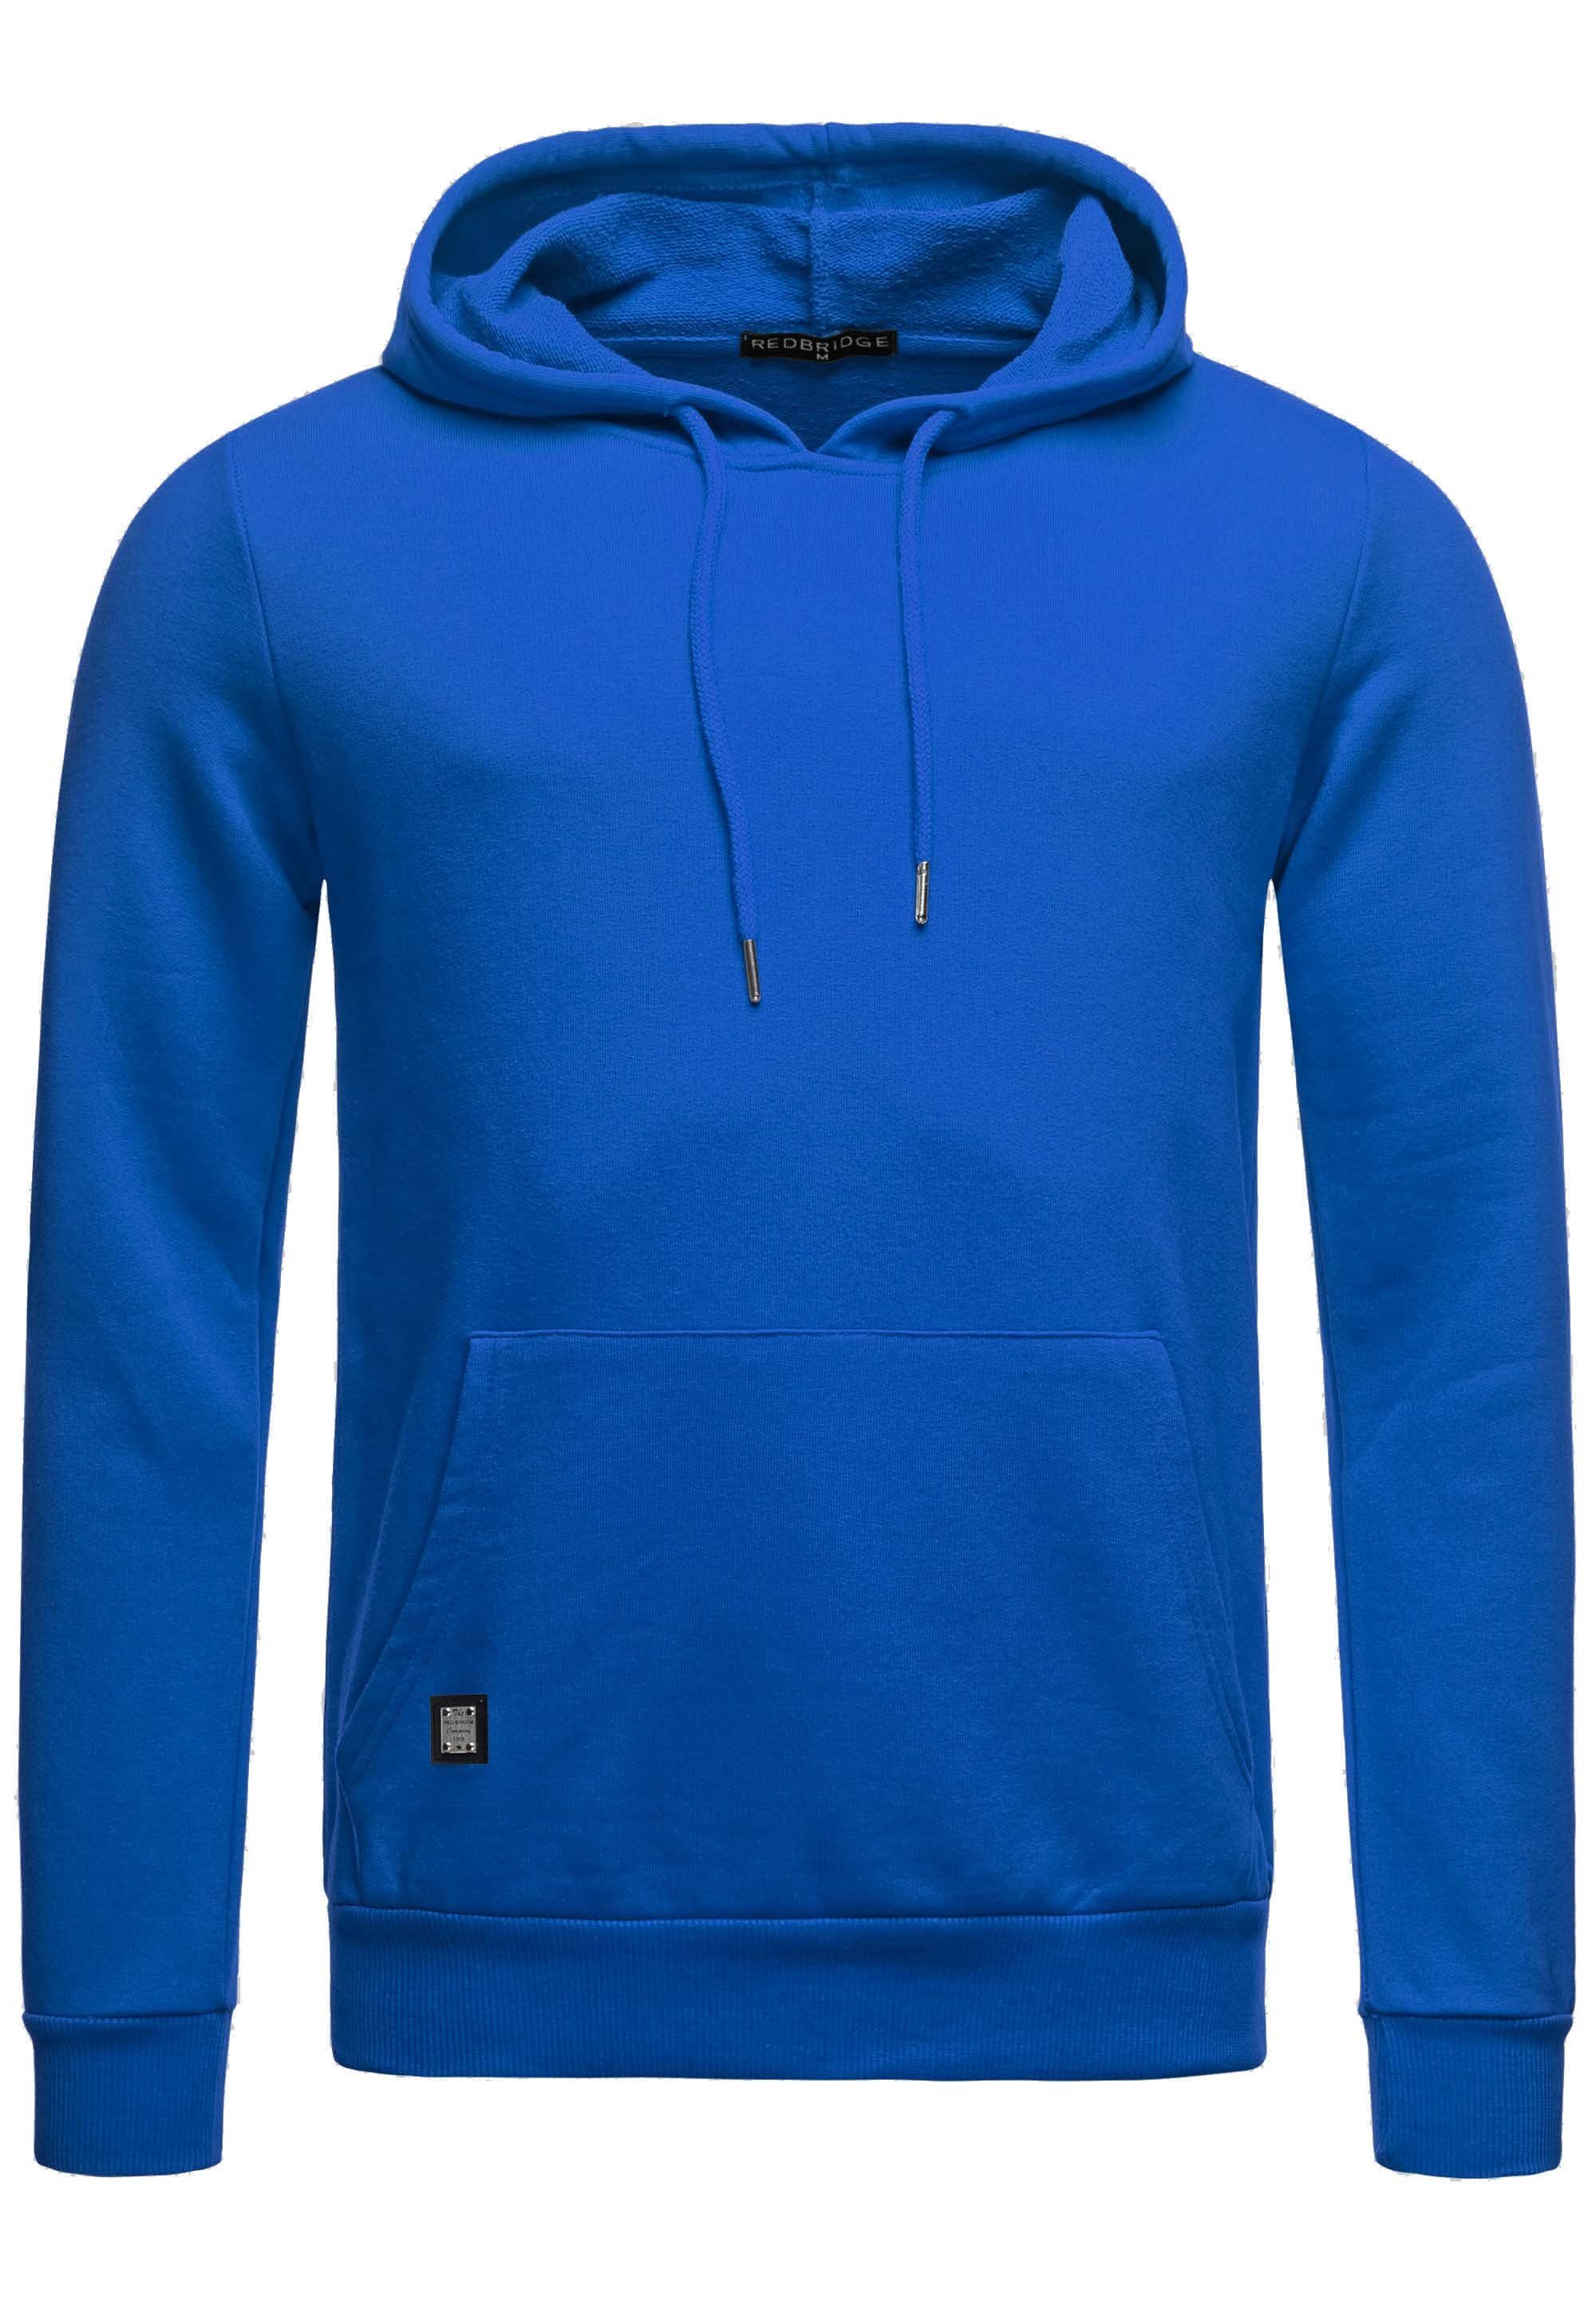 Qualität mit Hoodie Premium Saxeblau Kapuzensweatshirt RedBridge Kängurutasche